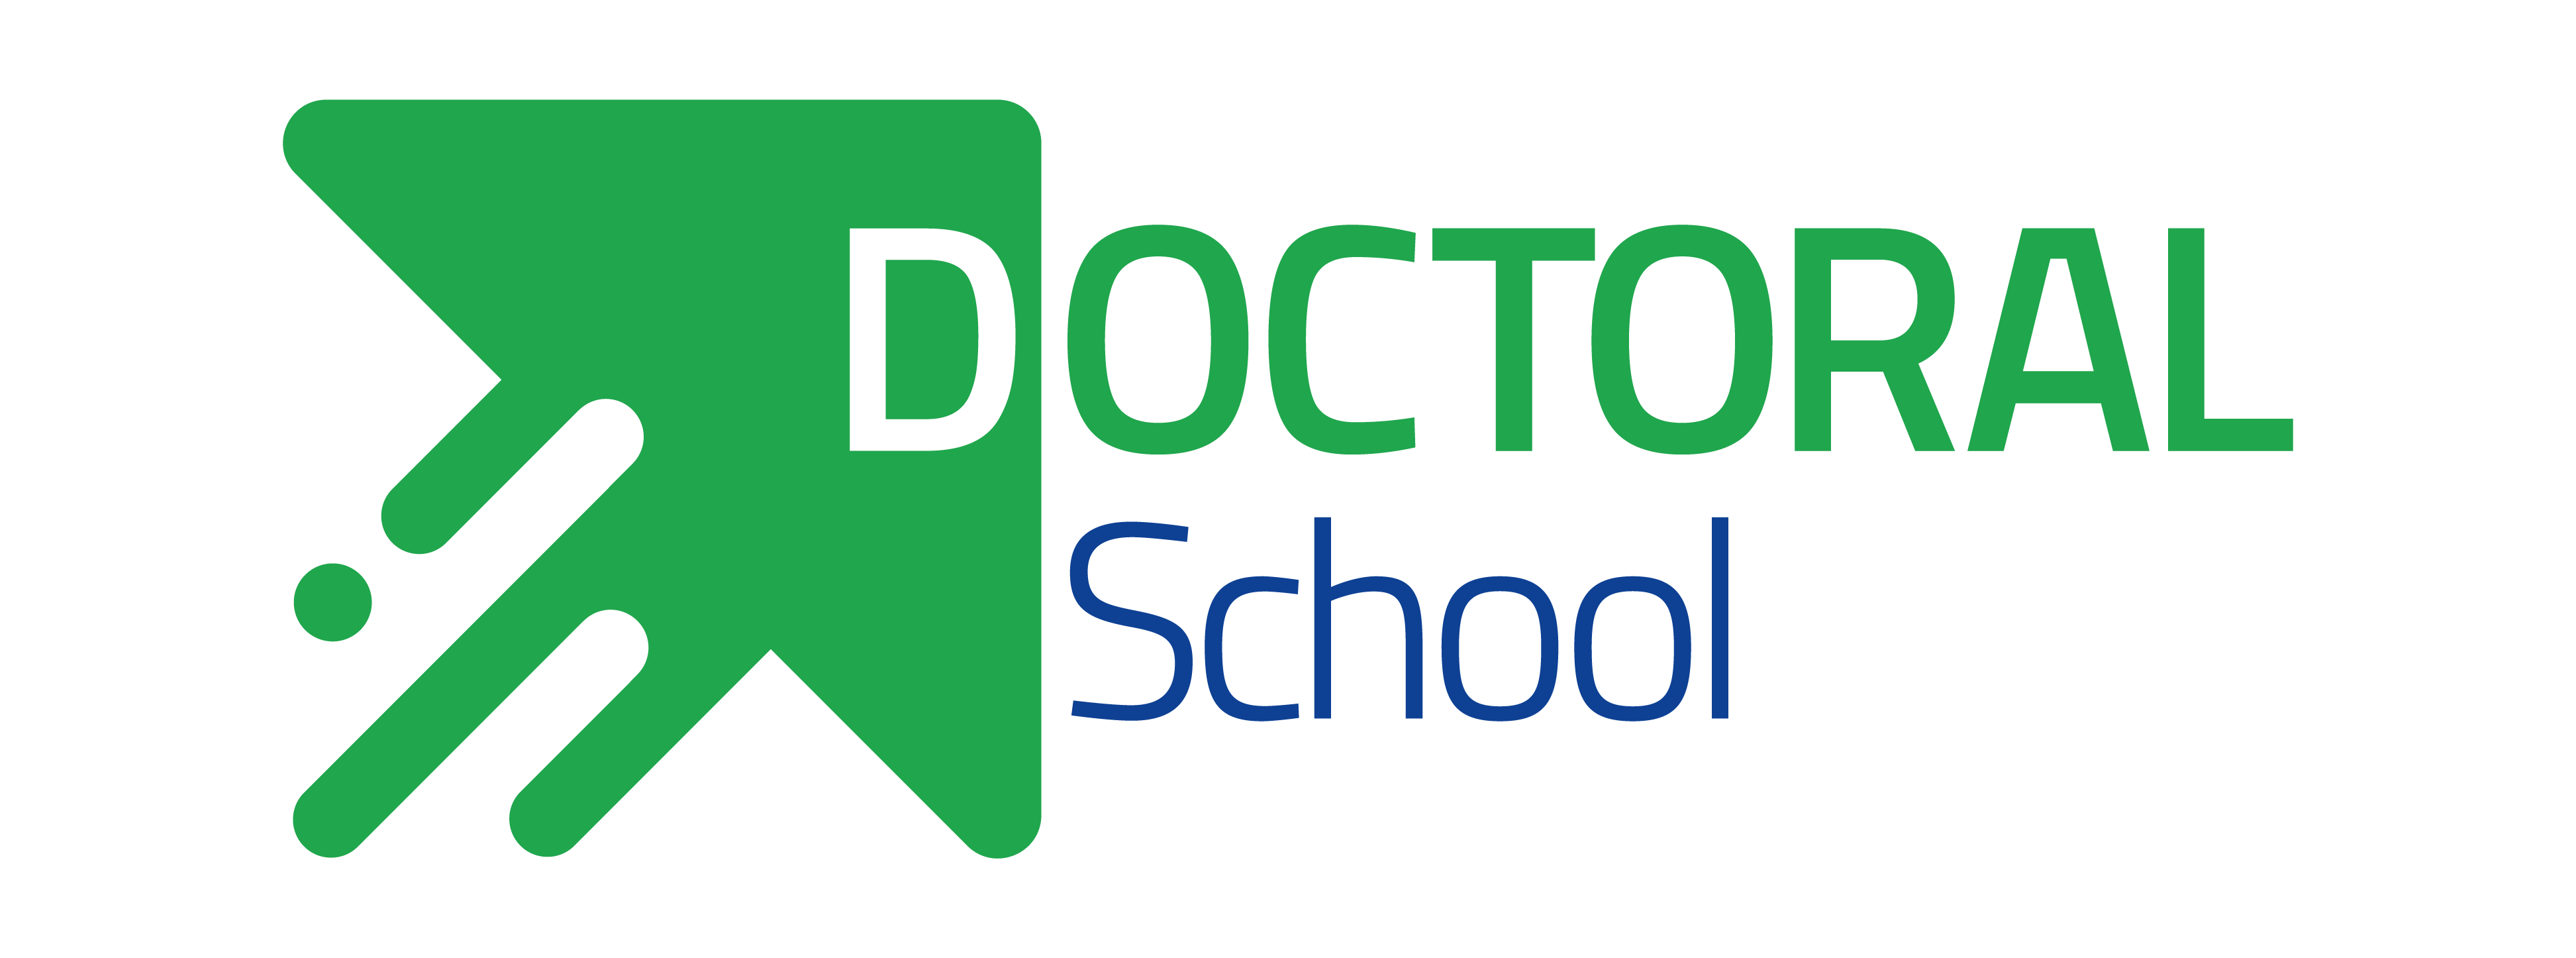 EIT Manufacturing Doctoral School Logo